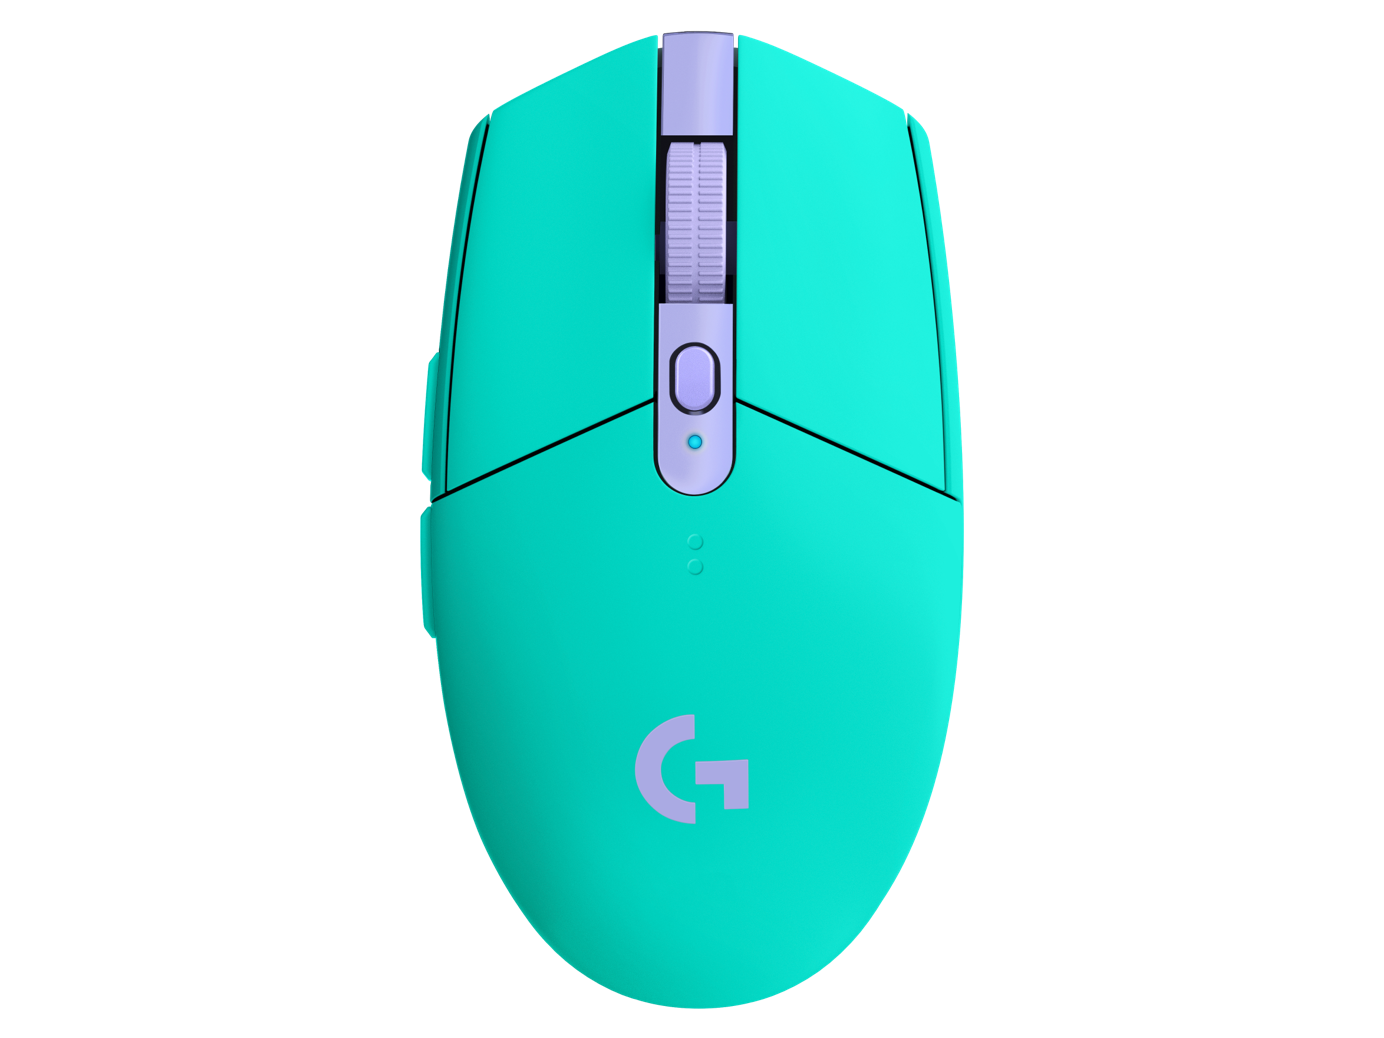 Mouse Gamer Logitech G305 Lila Inalambrico 12000 